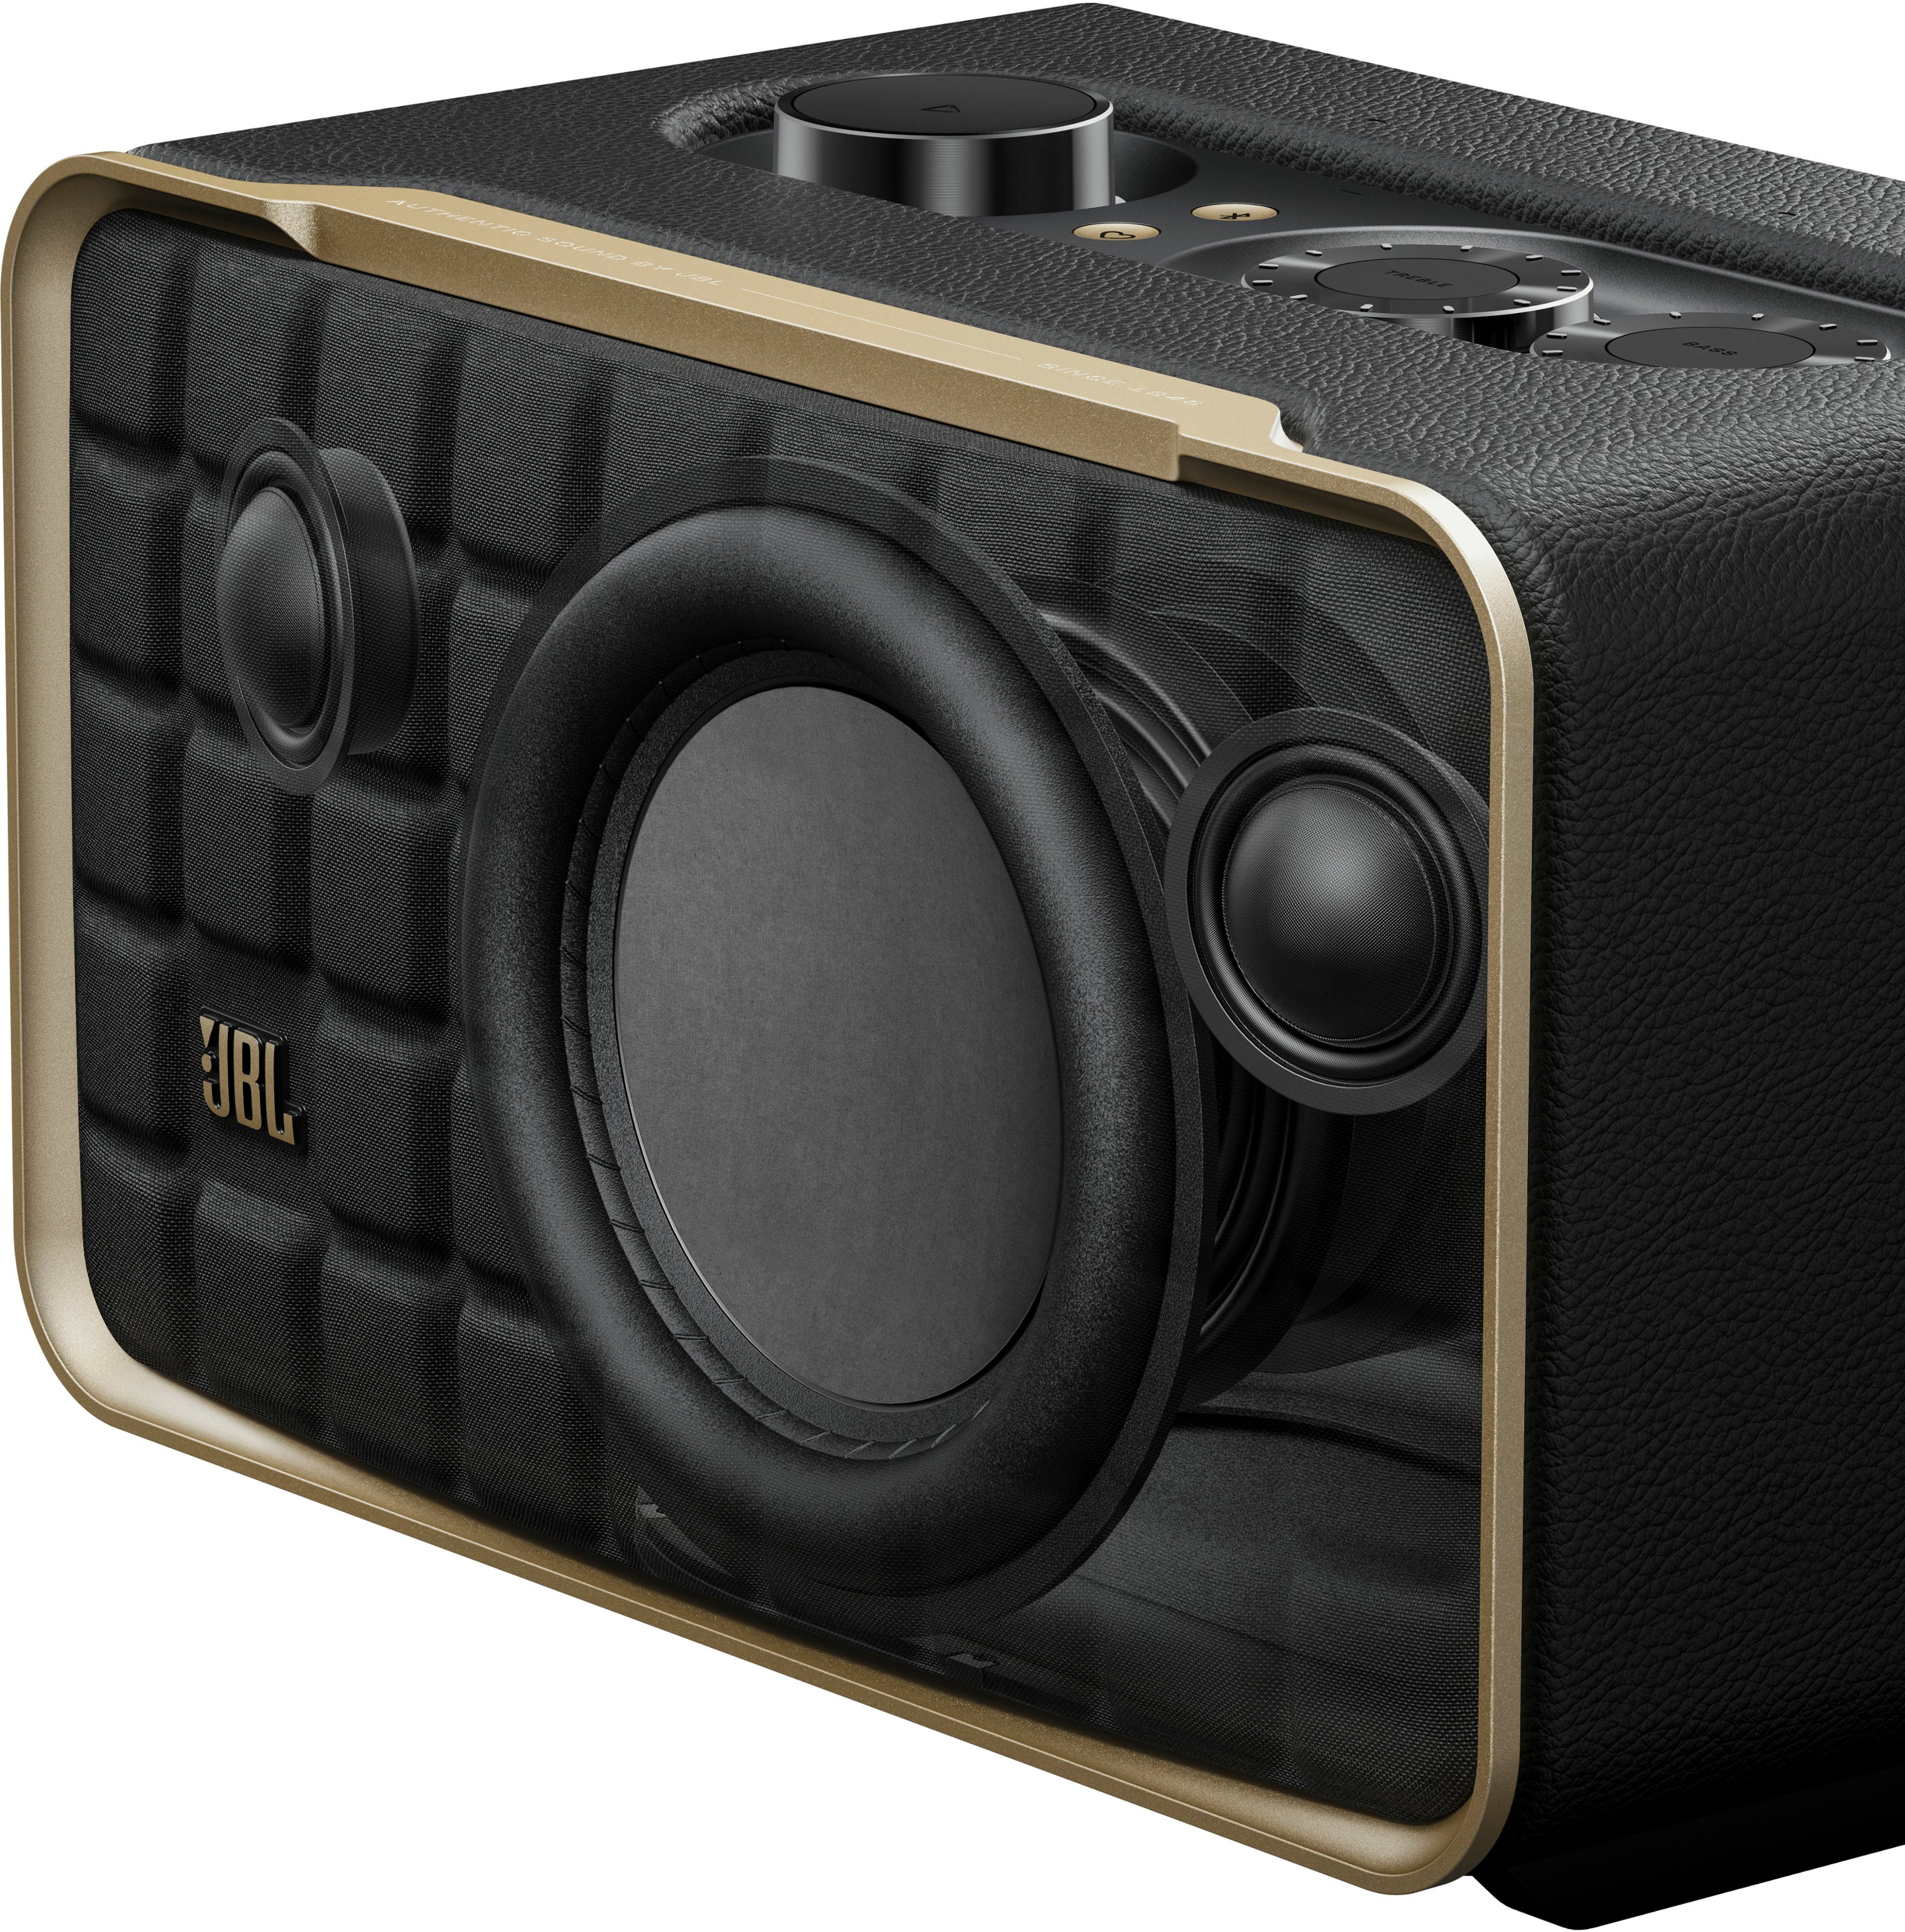 Speaker 200 JBL Home JBLAUTH200BLKAM - Black Smart Authentics Best Buy